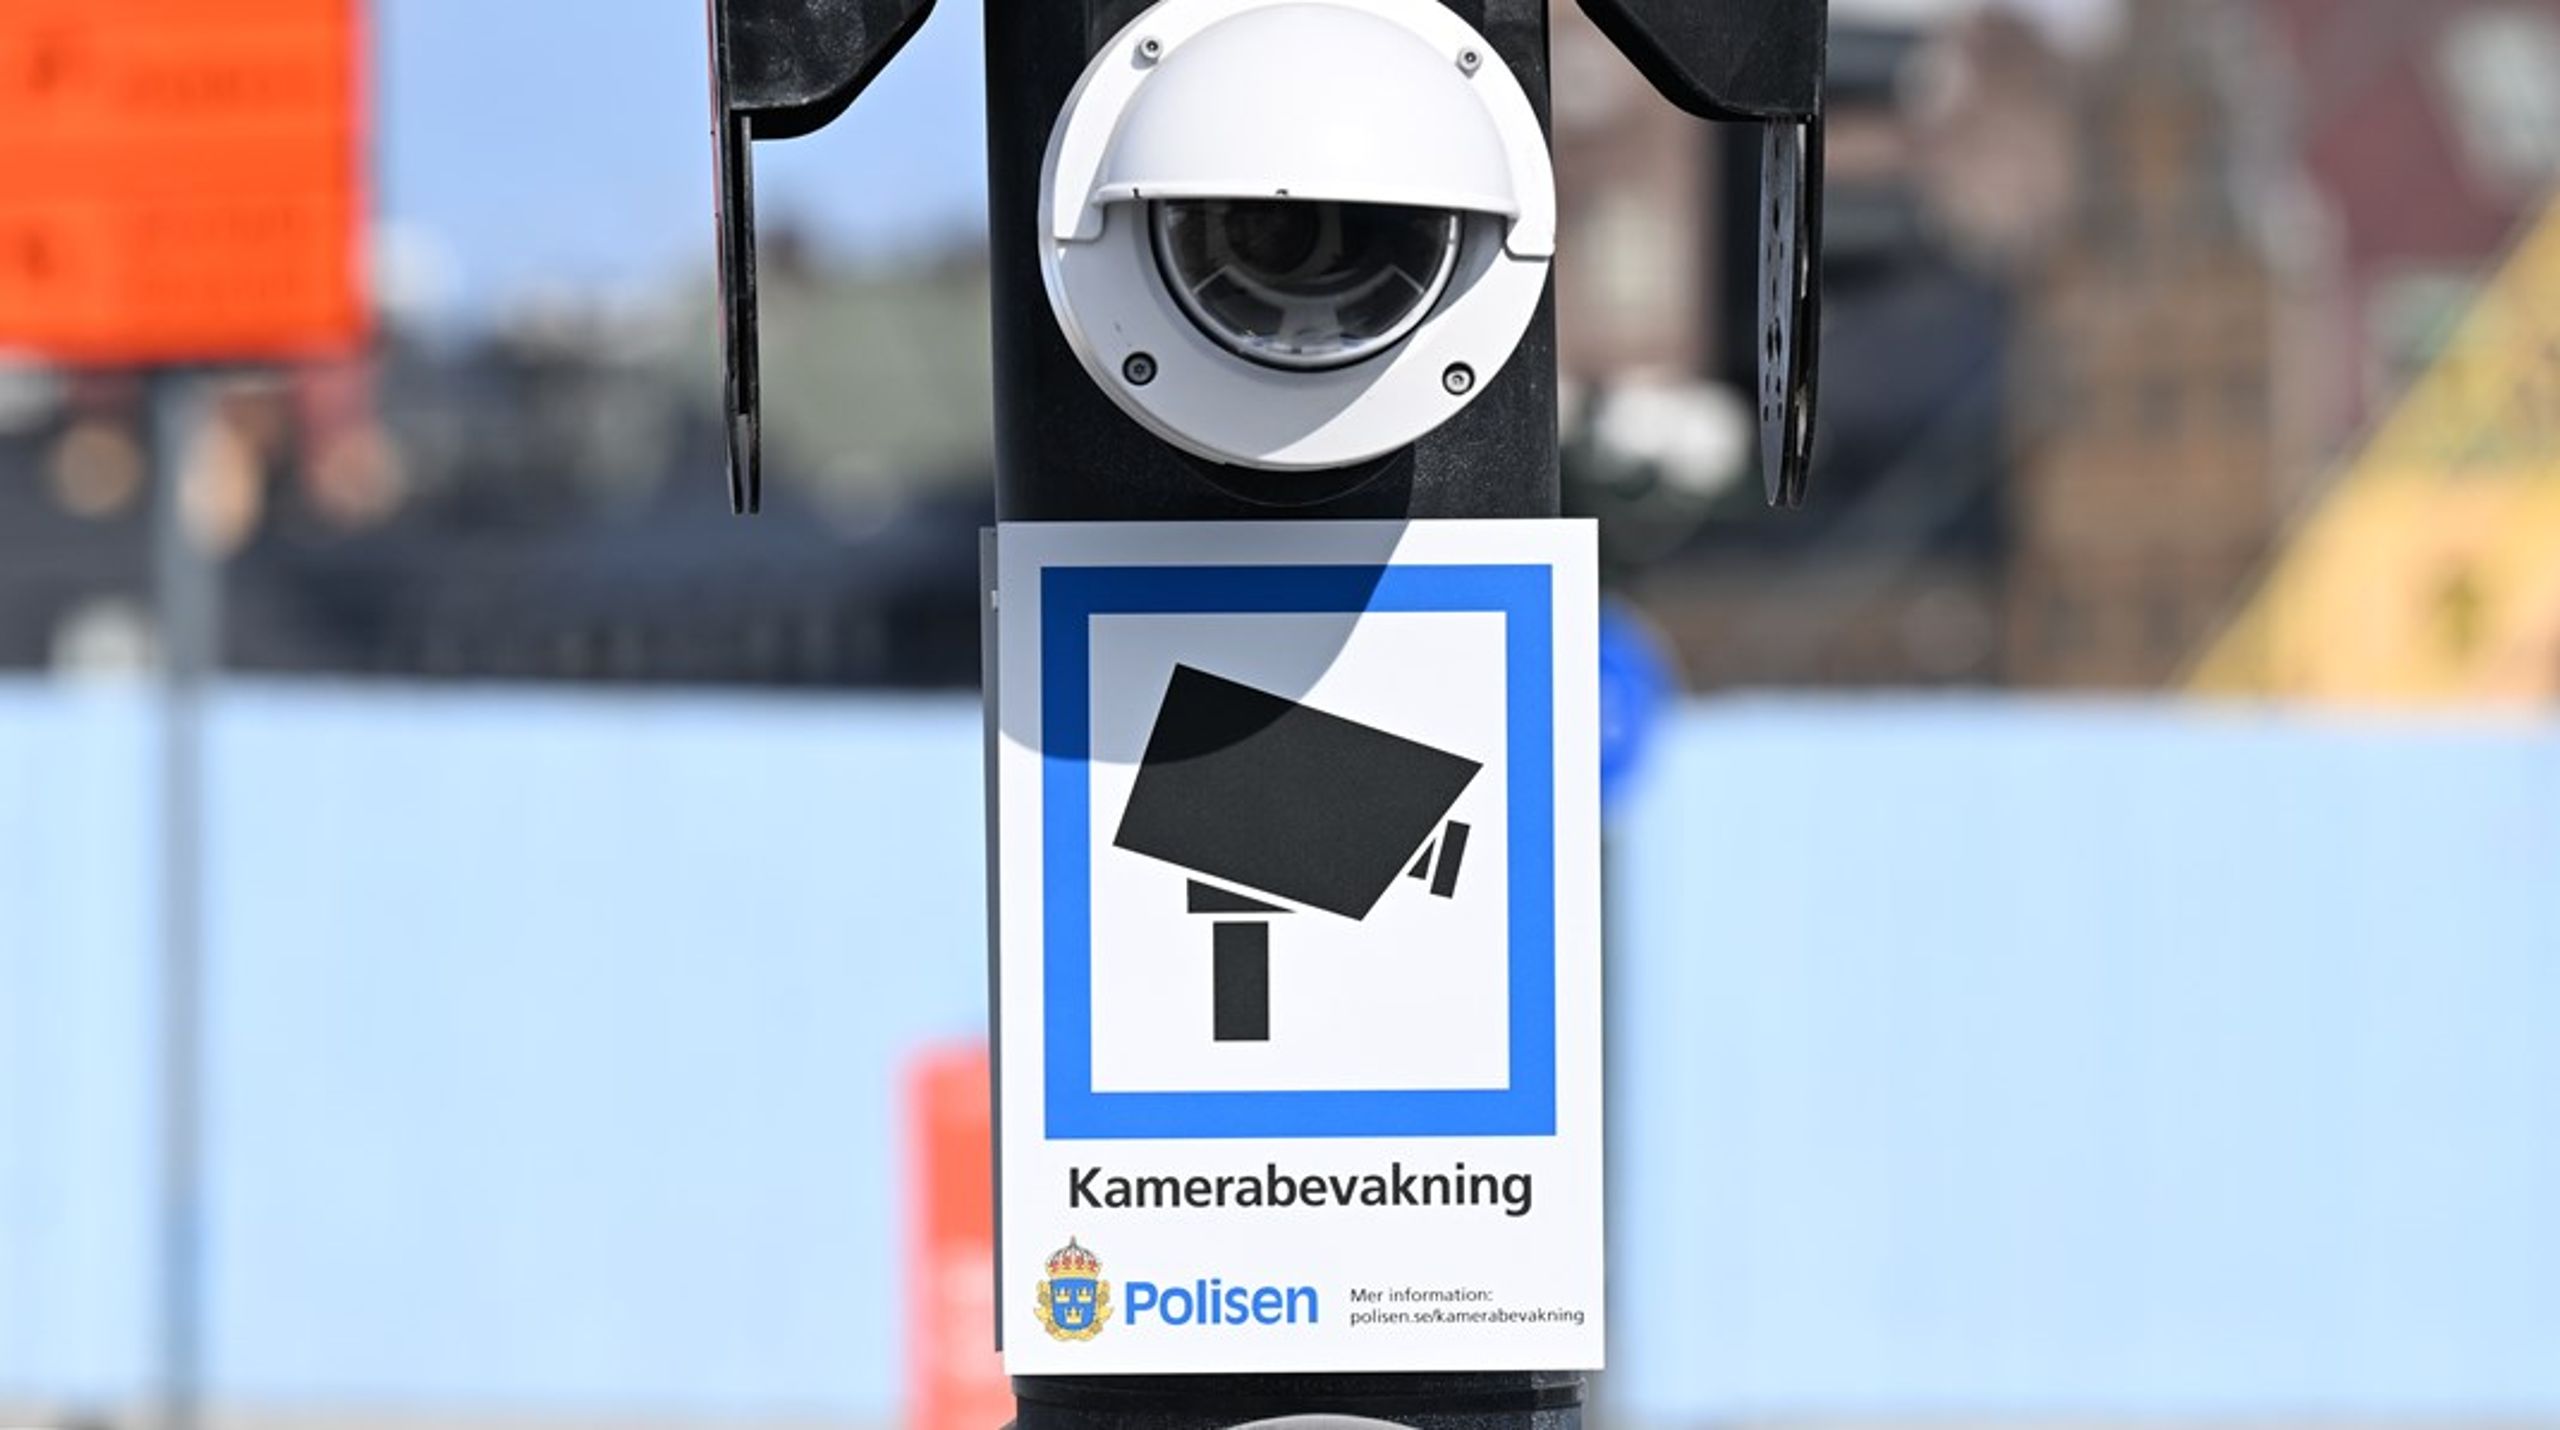 Sverige är på väg att bli ett övervakningssamhälle, menar debattörerna.